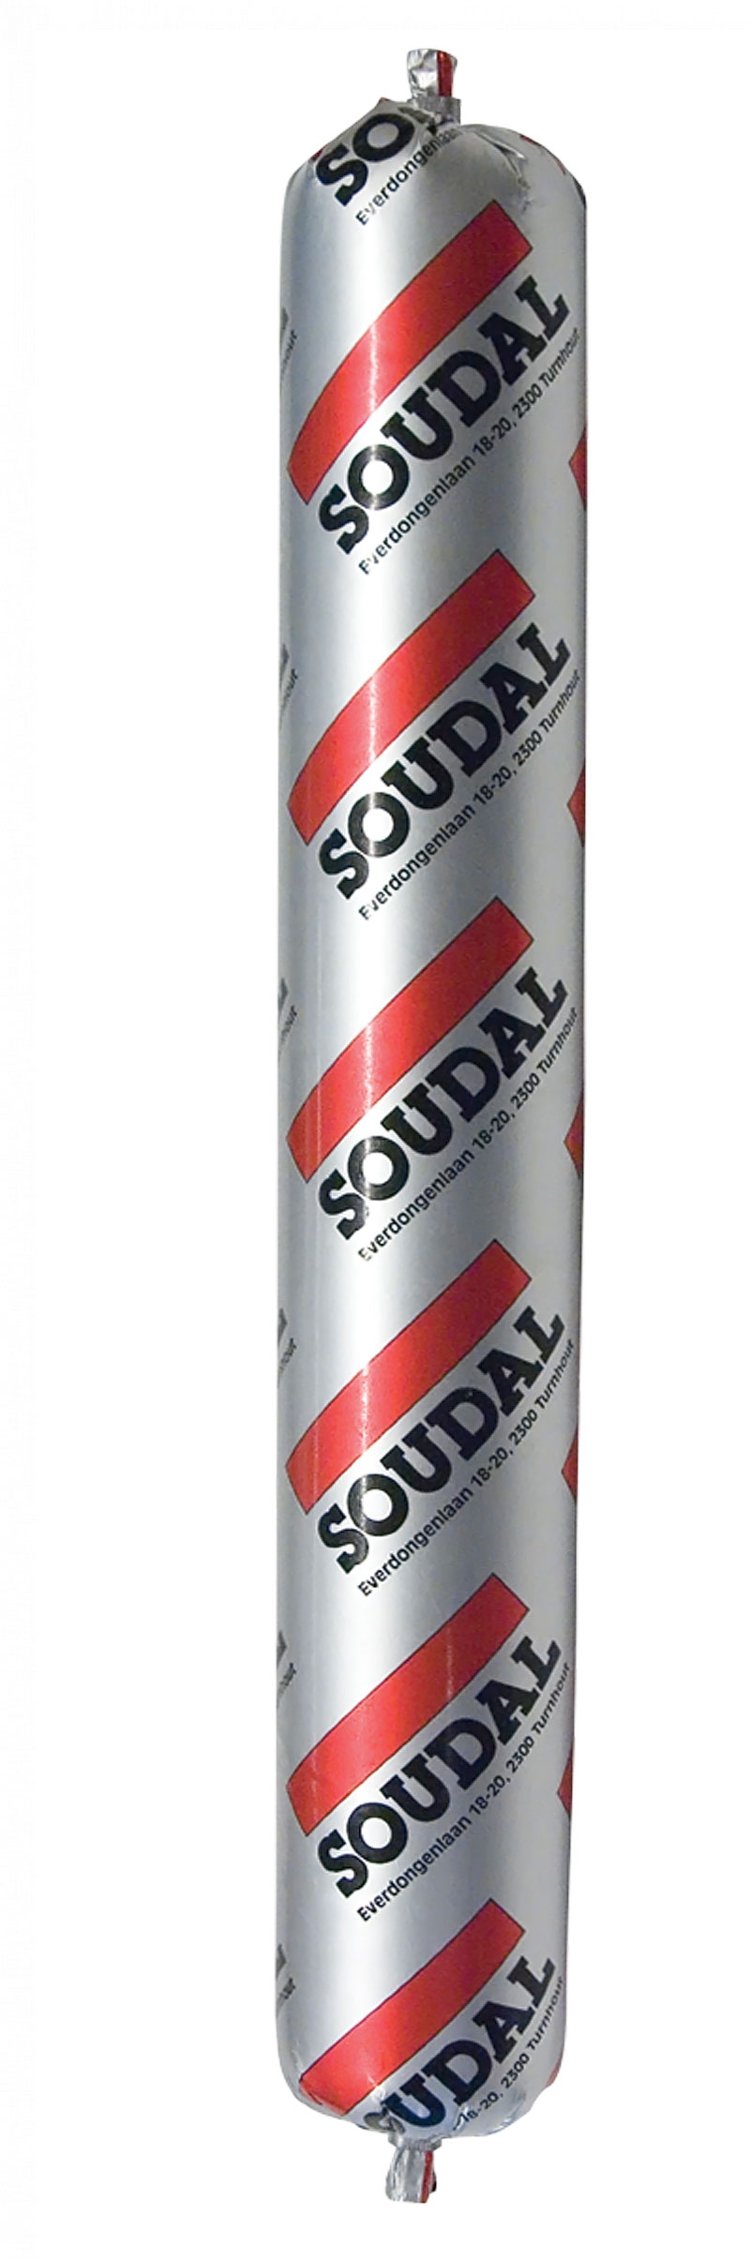 Полиуретановый клей-герметик Soudaflex 40 FC 600мл.